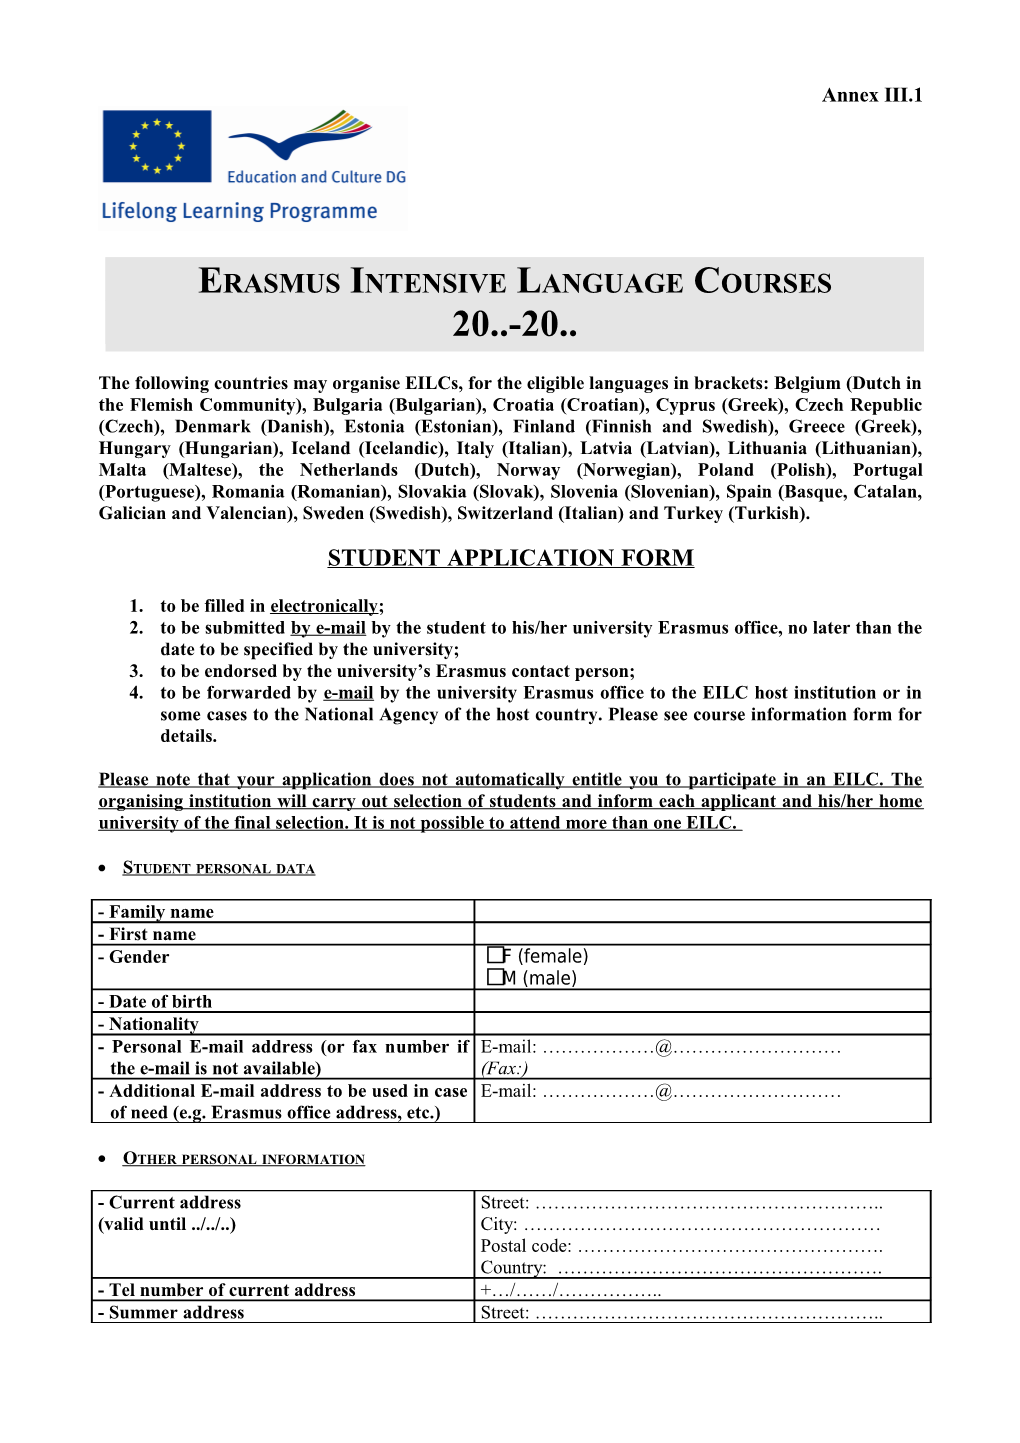 Erasmus Intensive Language Courses